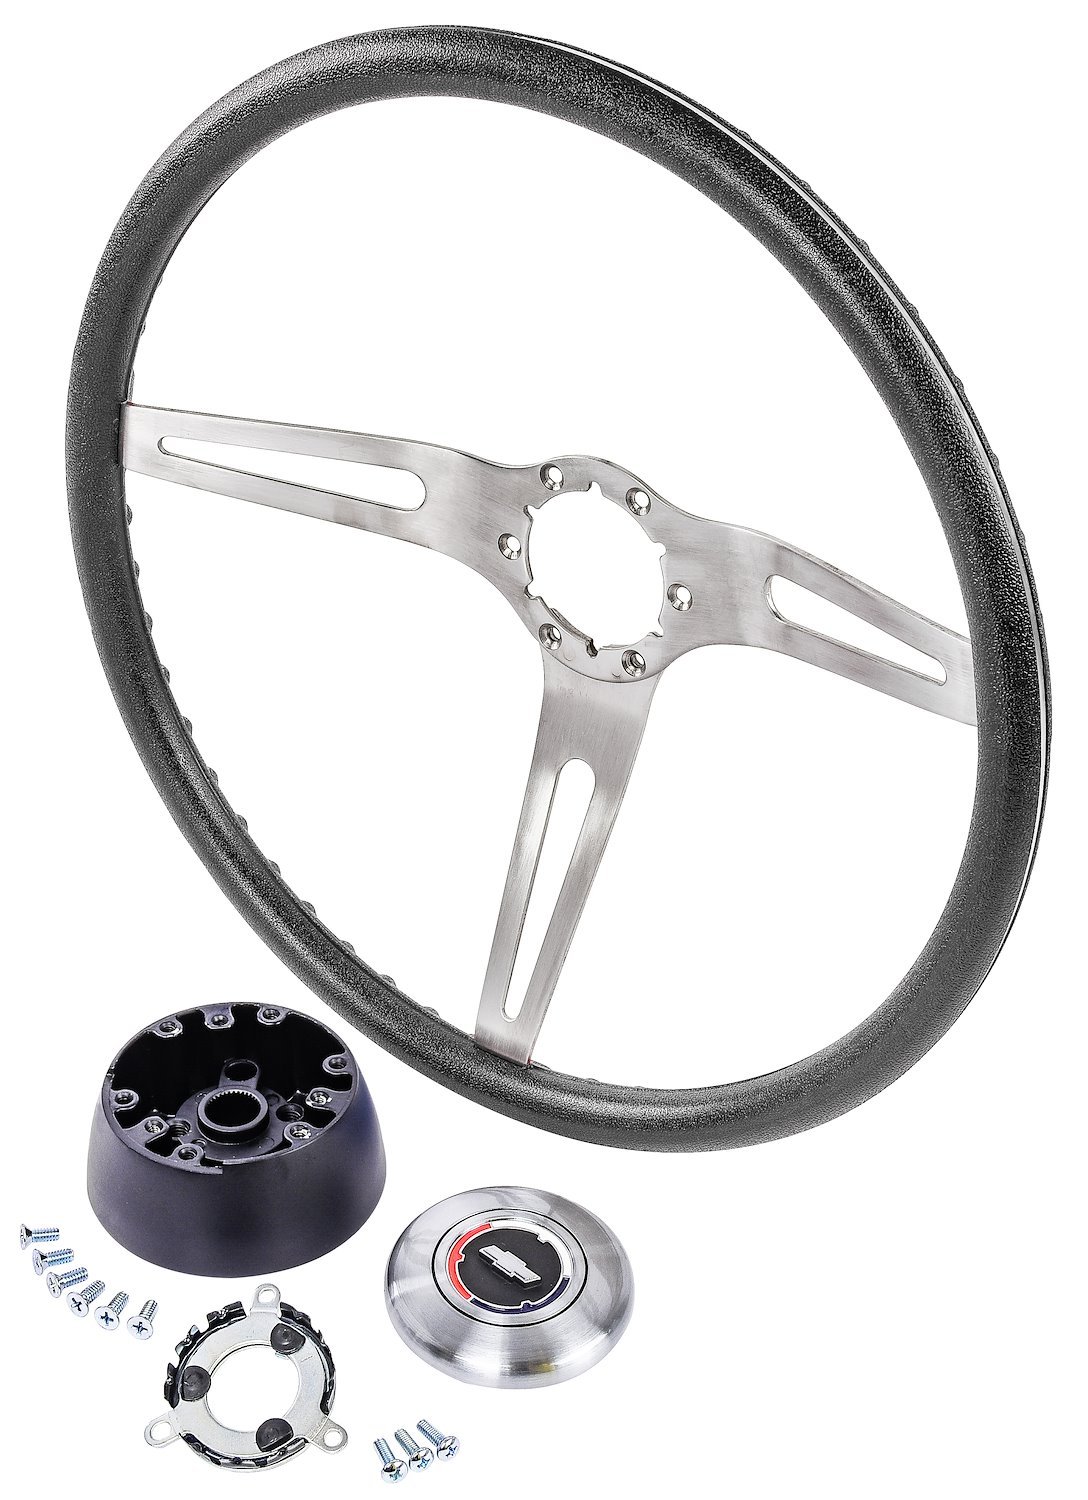 3-Spoke Comfort Grip Steering Wheel Kit Fits Select